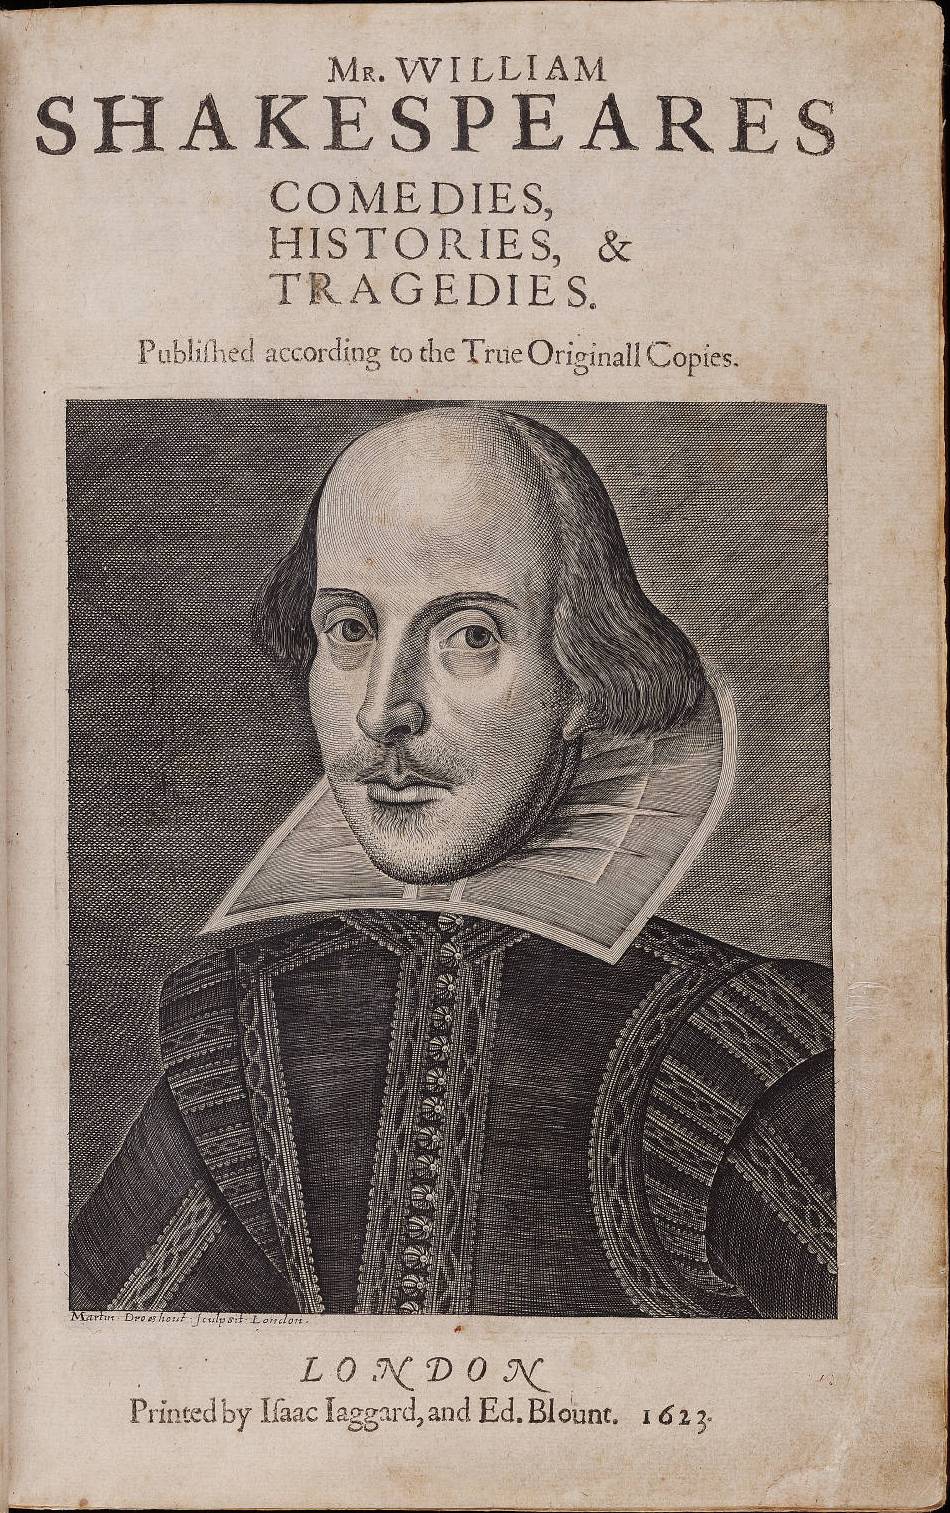 William Shakespeare's Plays